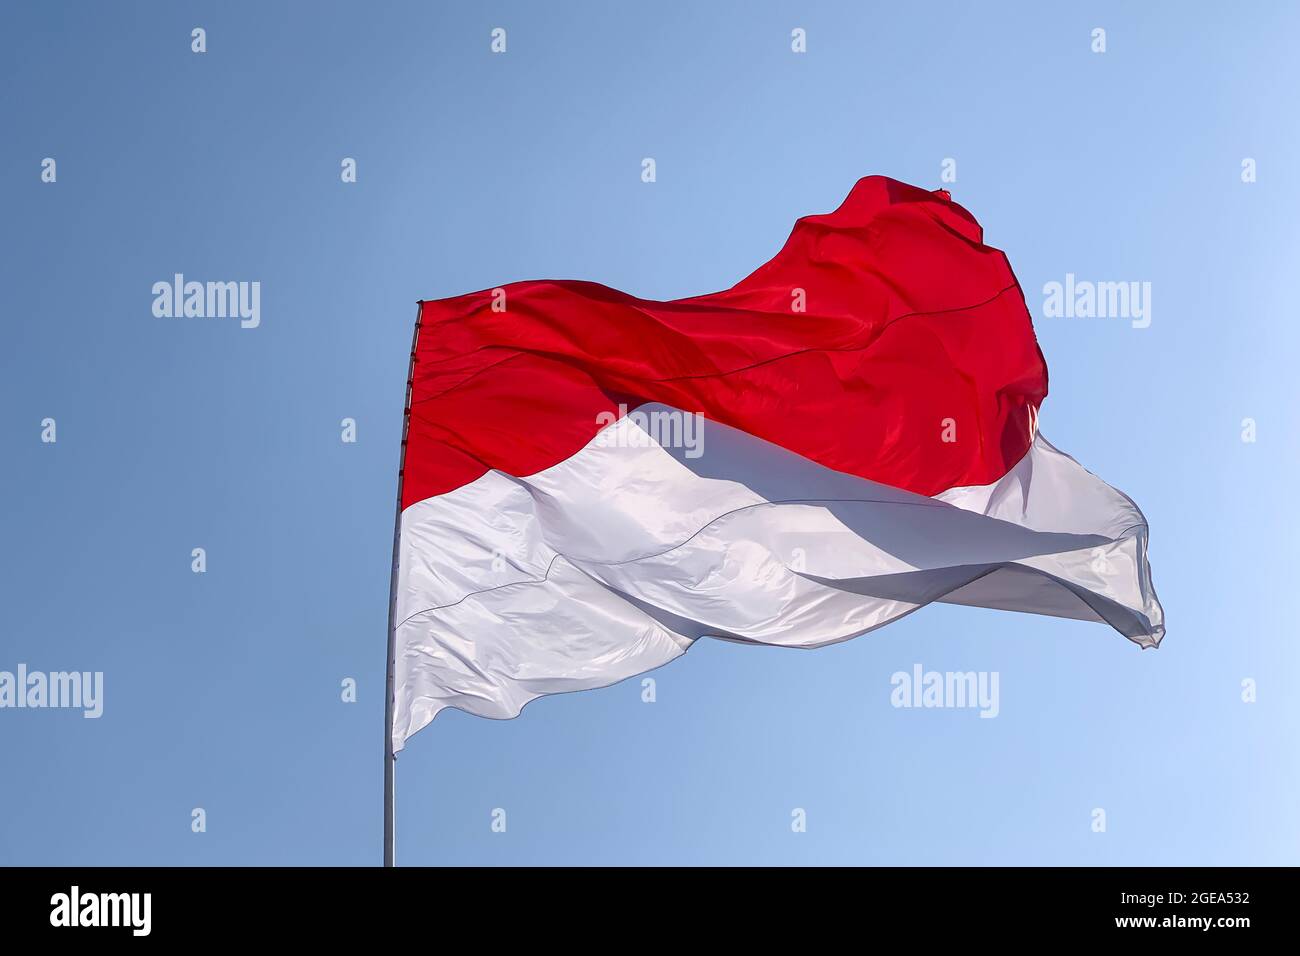 Quốc kỳ Indonesia với màu đỏ và trắng truyền thống mang lại cảm giác lạc quan, may mắn và sự tự do cho người xem. Monaco, một đất nước nhỏ bé tại châu Âu, có một quốc kỳ màu đỏ trên nền trắng, biểu tượng cho sự giàu có và xã hội lao động. Hãy xem hình ảnh liên quan để khám phá thêm về hai quốc gia này.